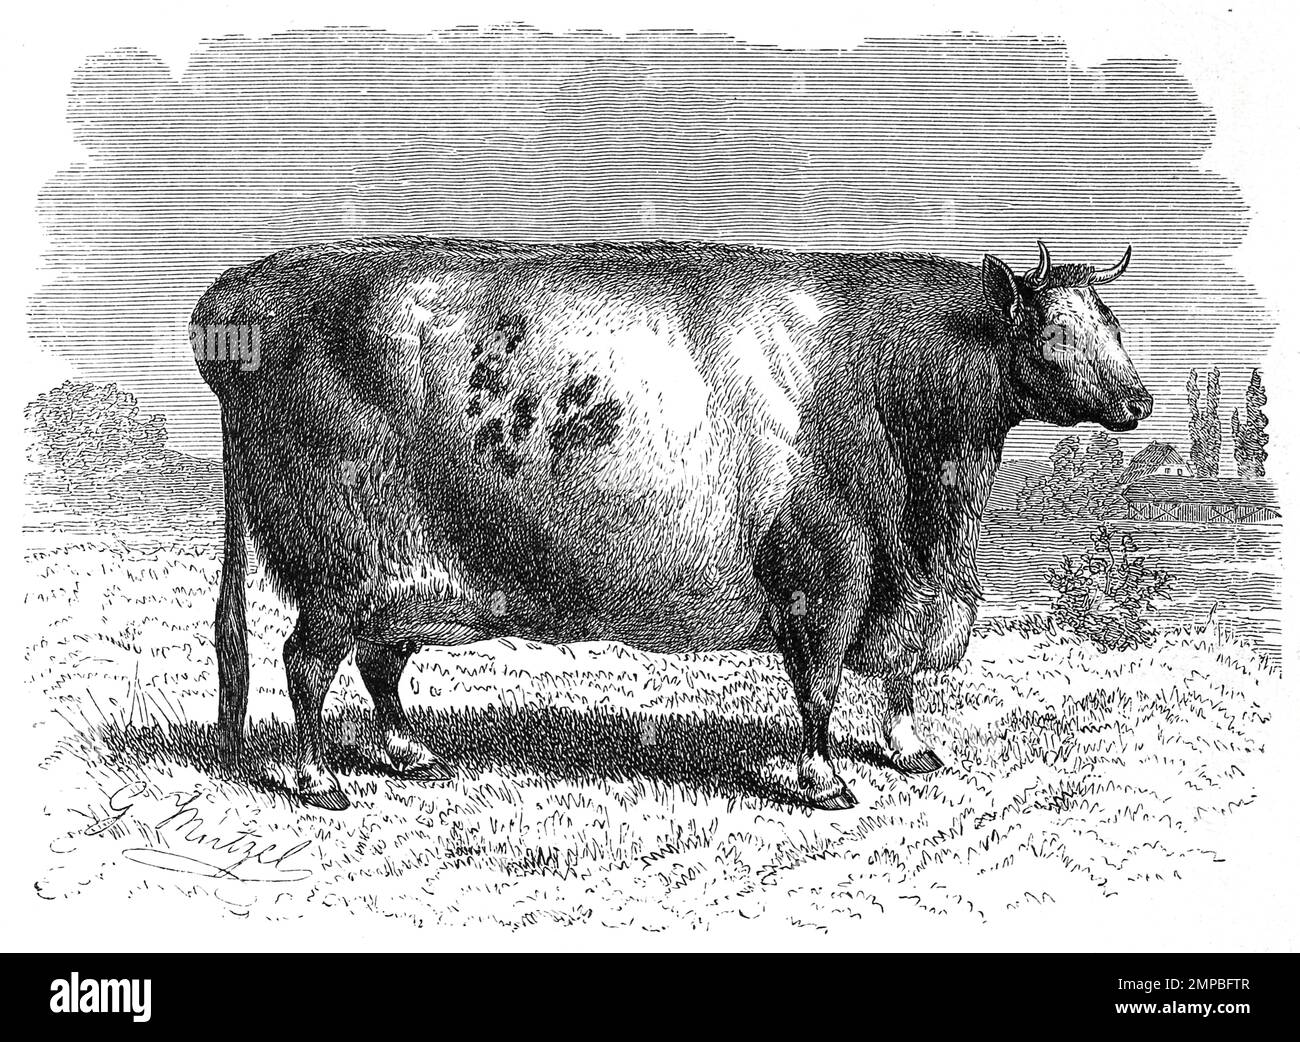 Durham-Rind, Bos taurus dunelmensis, Die Rinderrasse Shorthorn-Rind stammt ursprünglich aus England, genauer aus der Gegend zwischen Durham und York, Historisch, digital restaurierte Reproduktion von einer Vorlage aus dem 18. Jahrhundert, Stock Photo